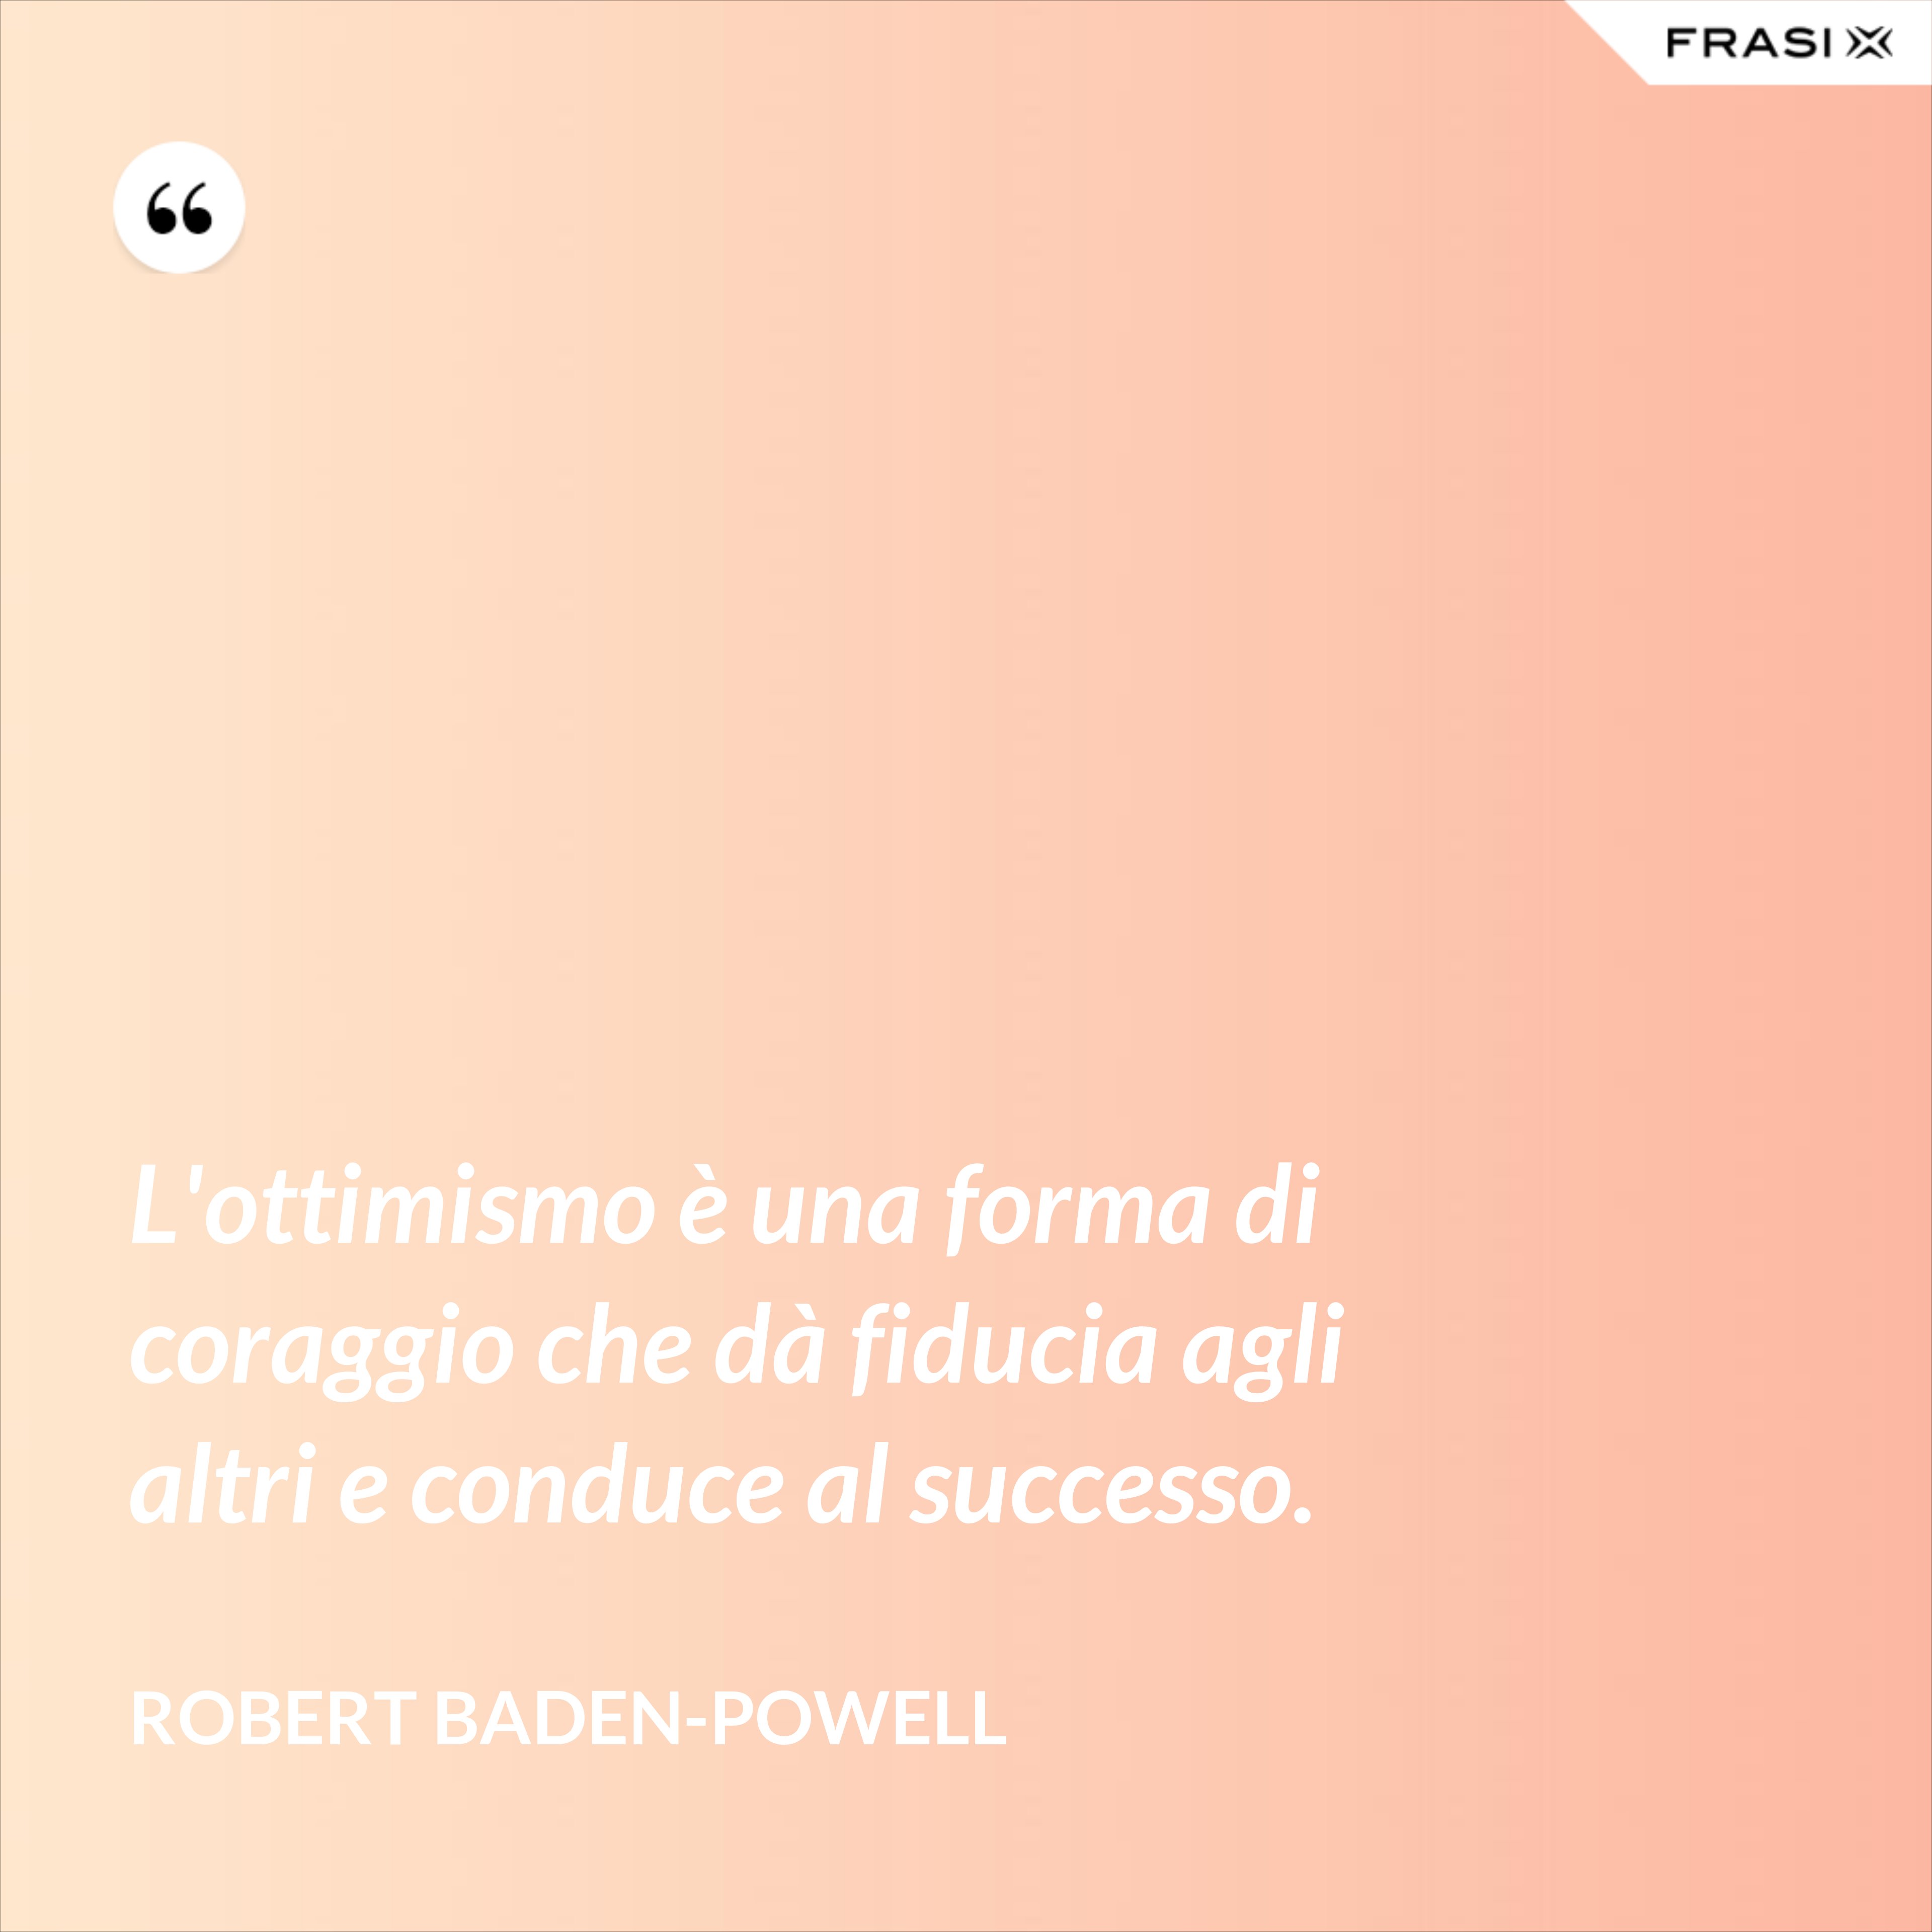 L'ottimismo è una forma di coraggio che dà fiducia agli altri e conduce al successo. - Robert Baden-Powell